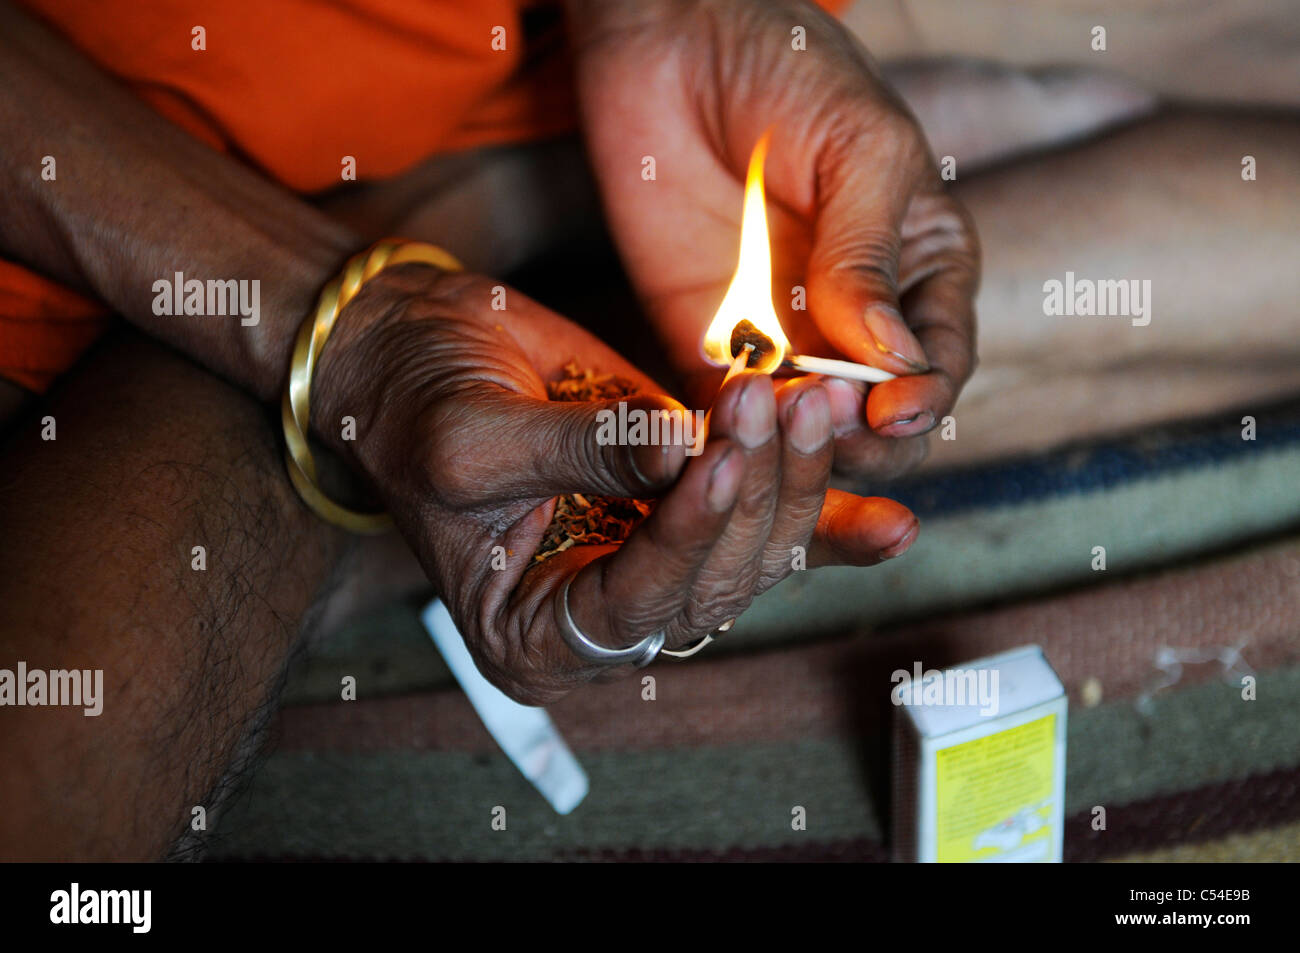 A scene in Haridwar, India Stock Photo